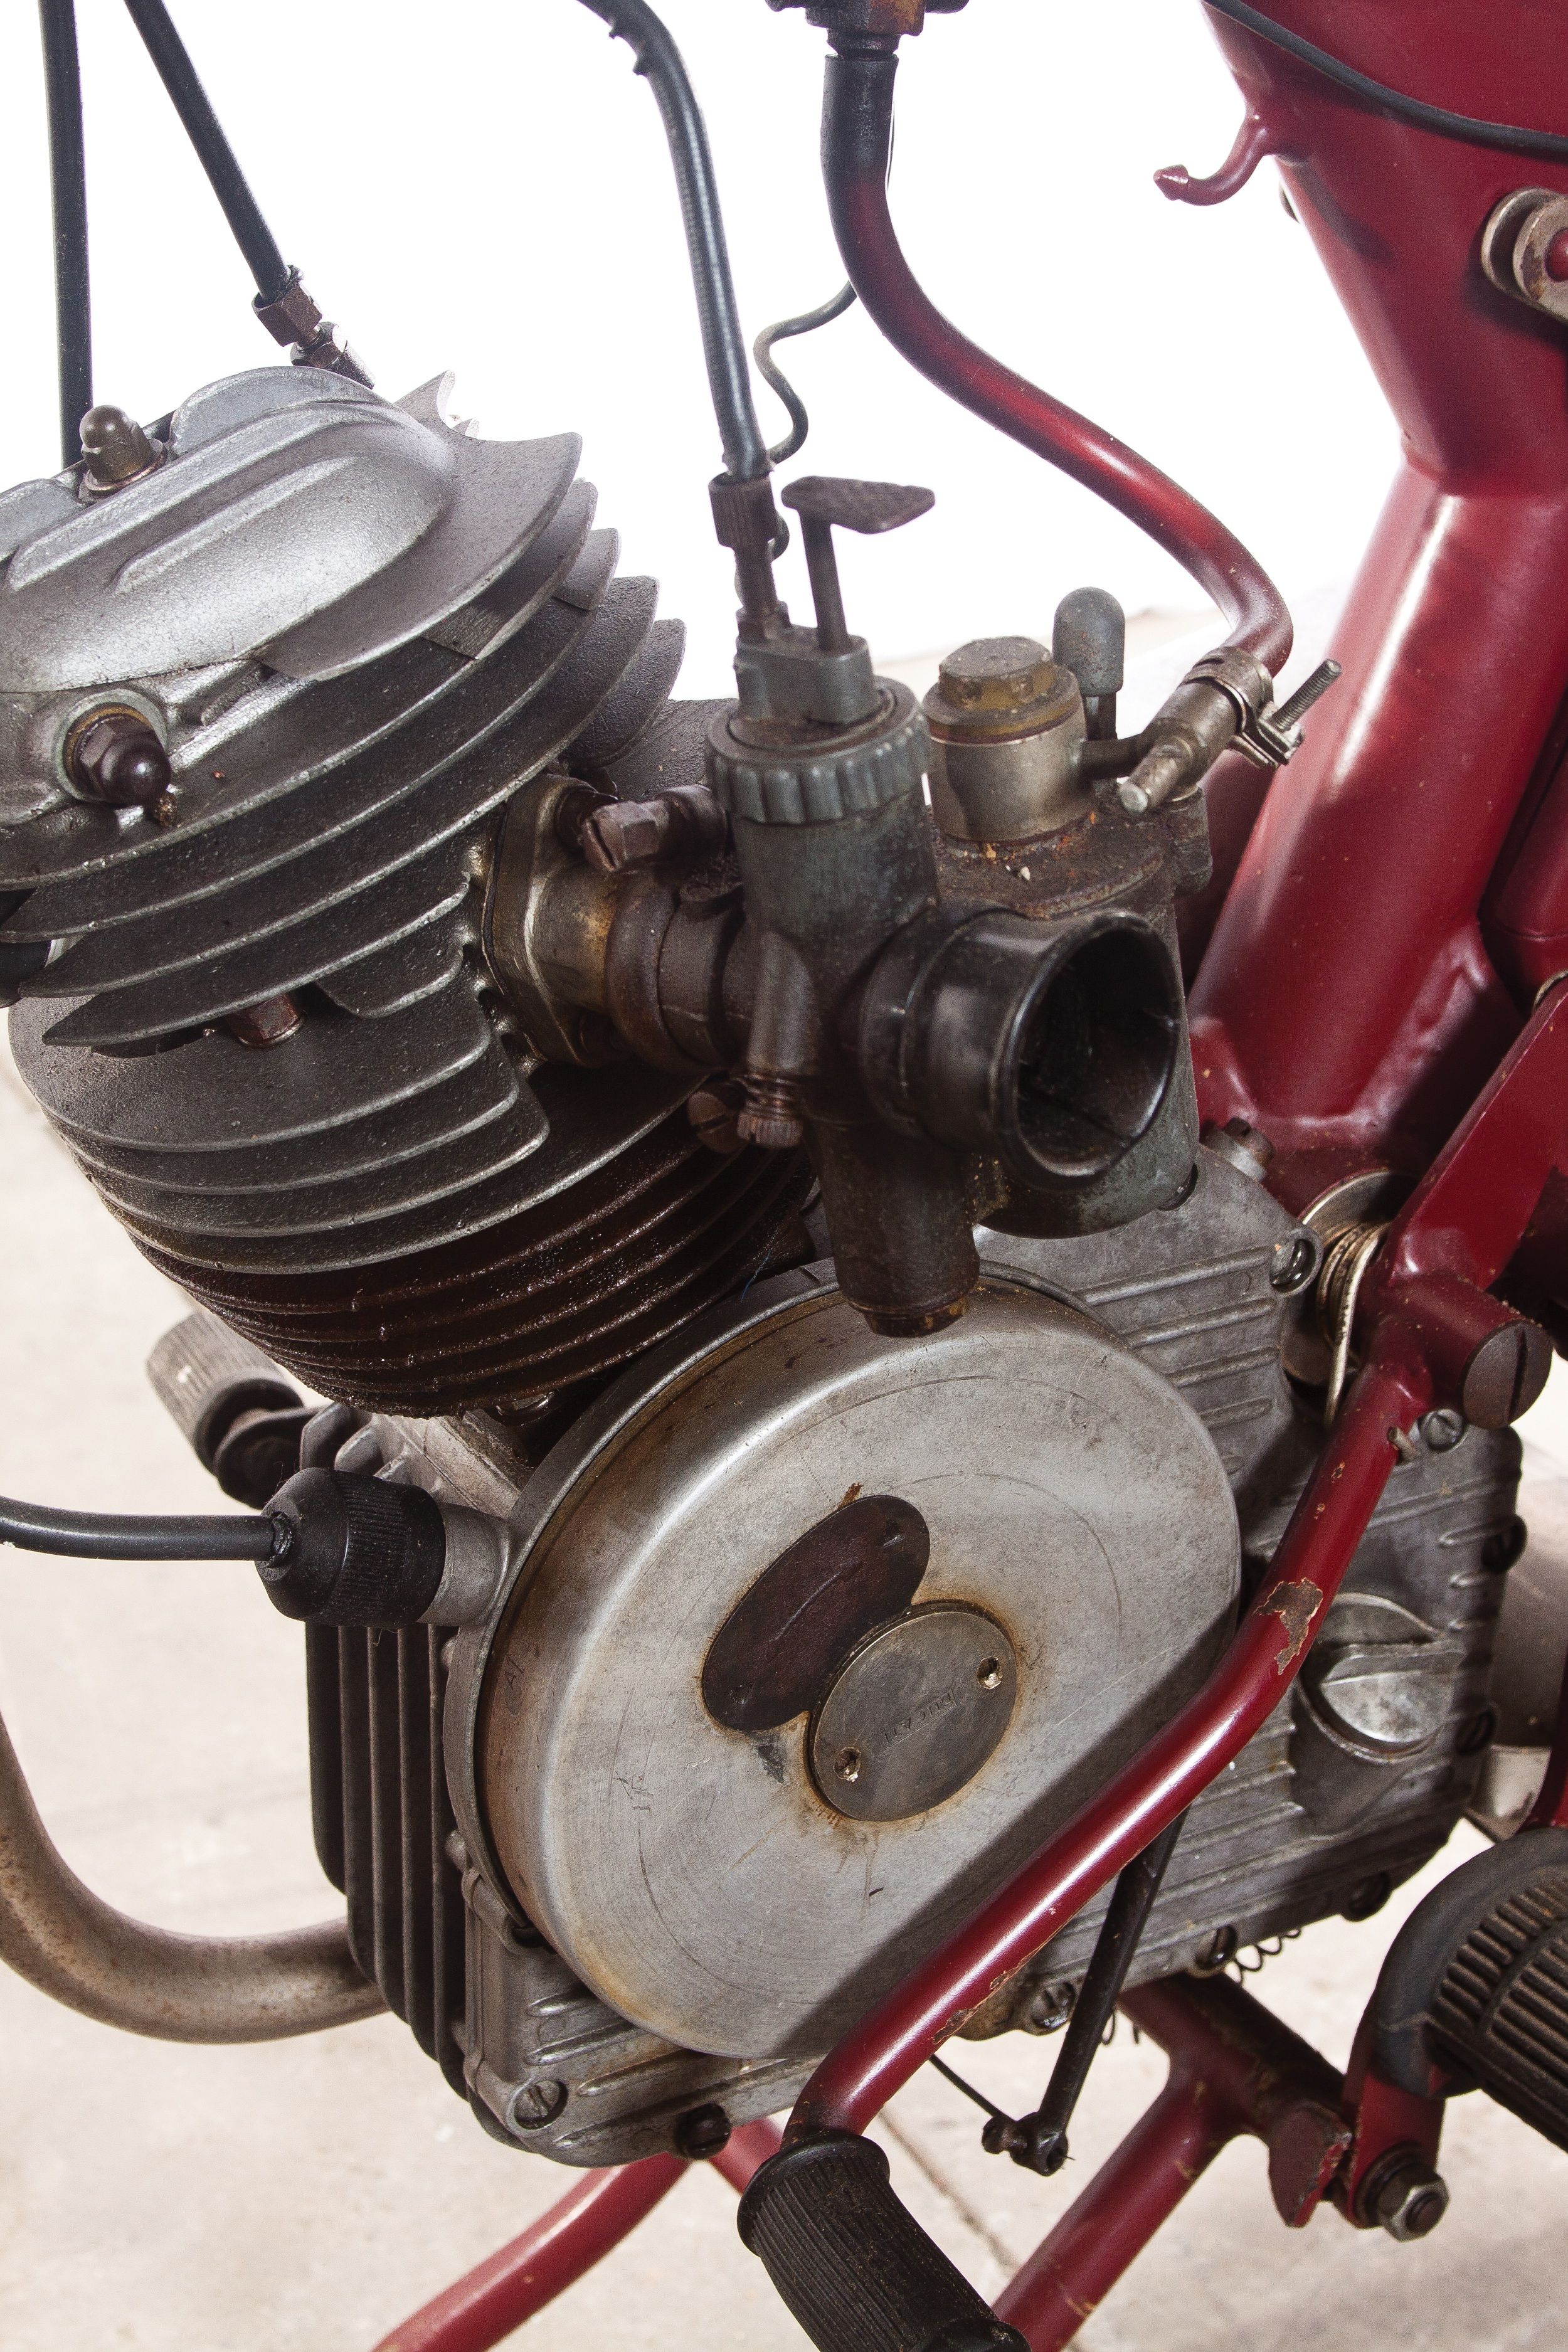 1950 Ducati 60